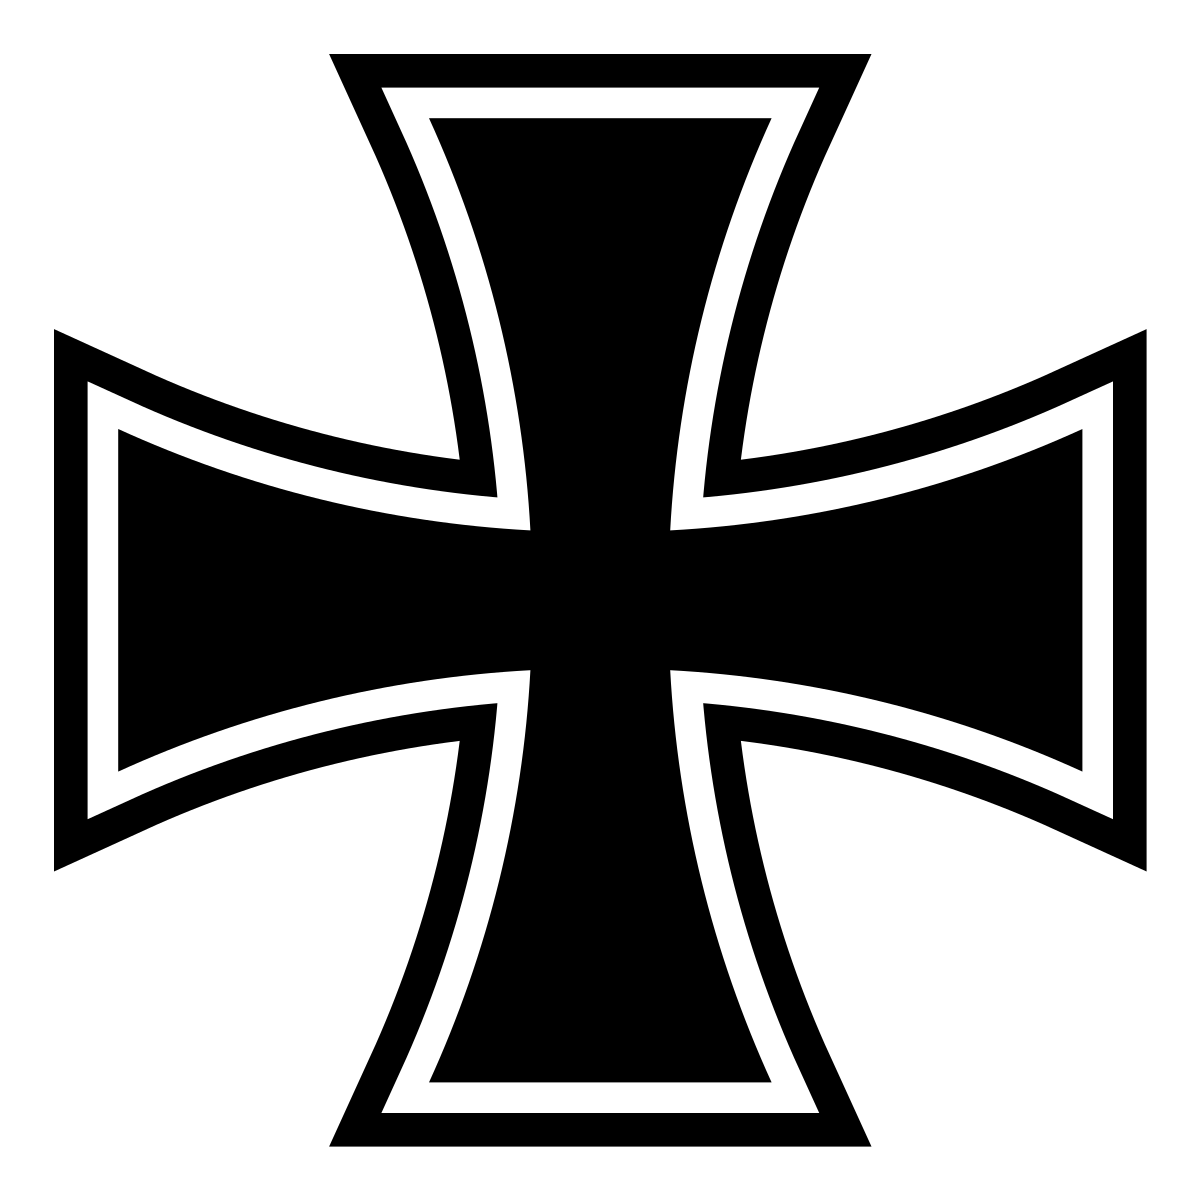 Une croix de fer. C'est une croix noire, avec deux bras concaves de même longueur qui se croisent en leur centre. La croix a un contour qui suit la forme de ses bras.